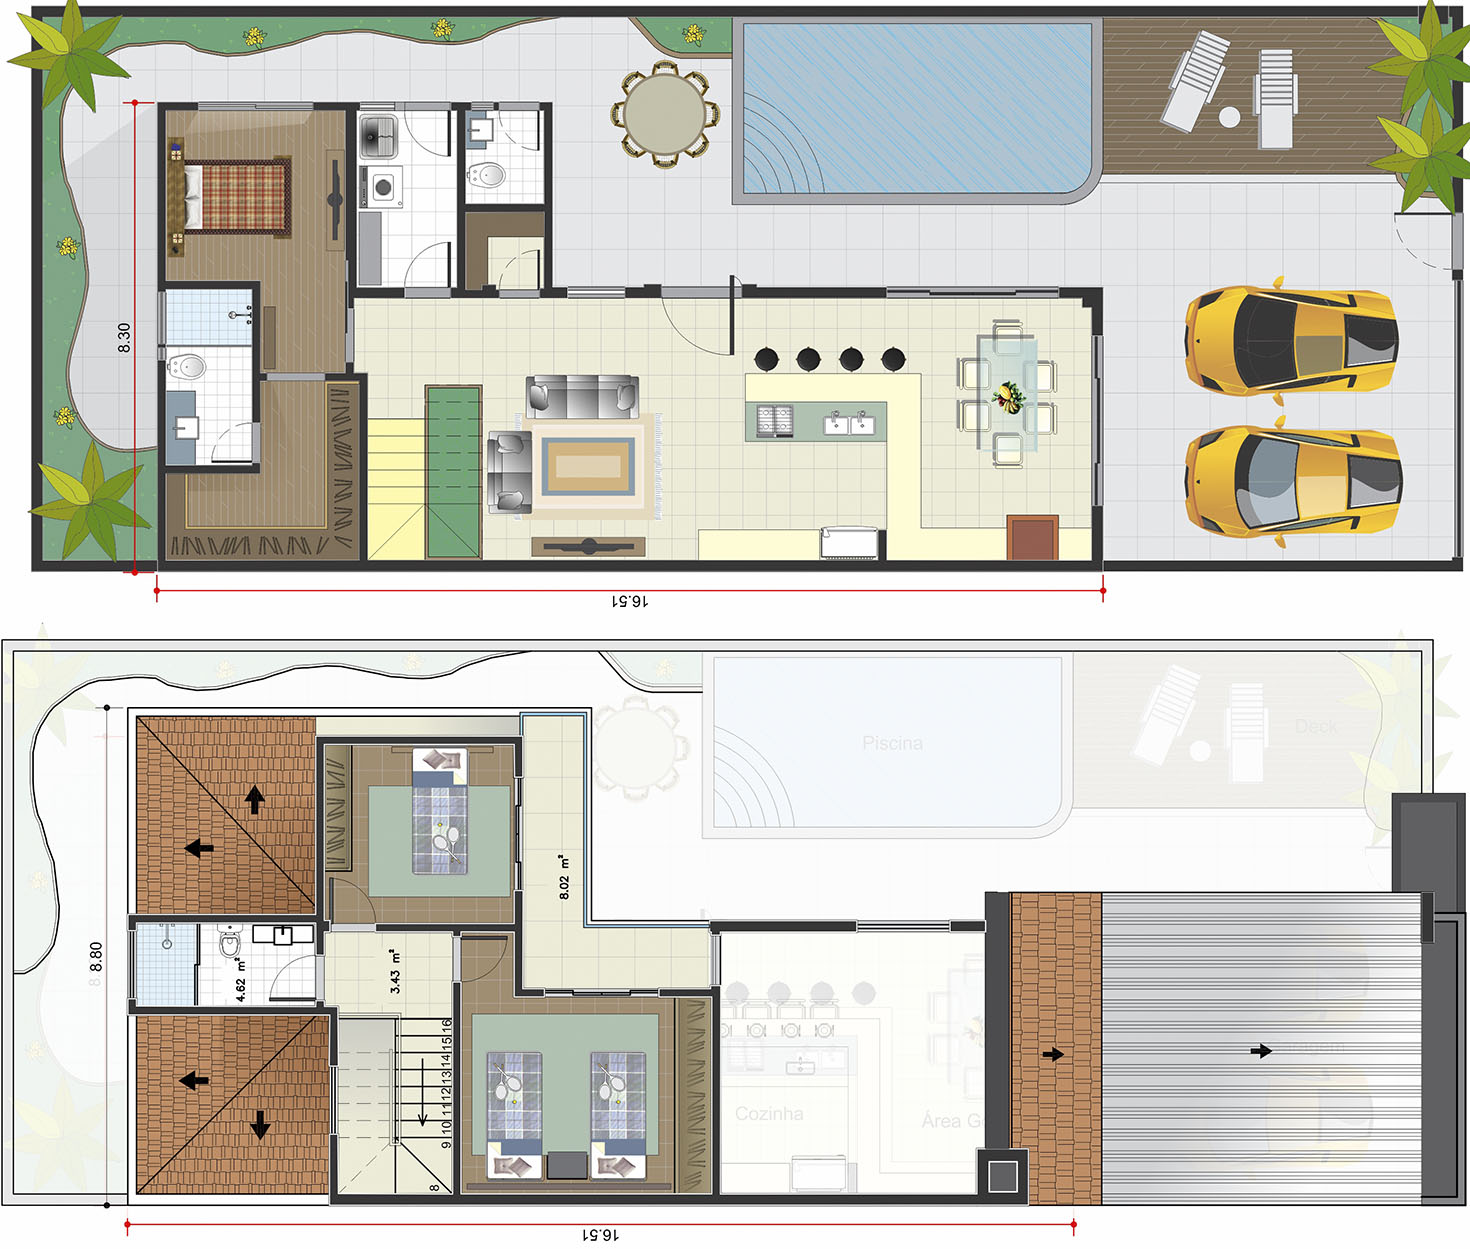 Floor plan with bedroom on the ground floor10x25